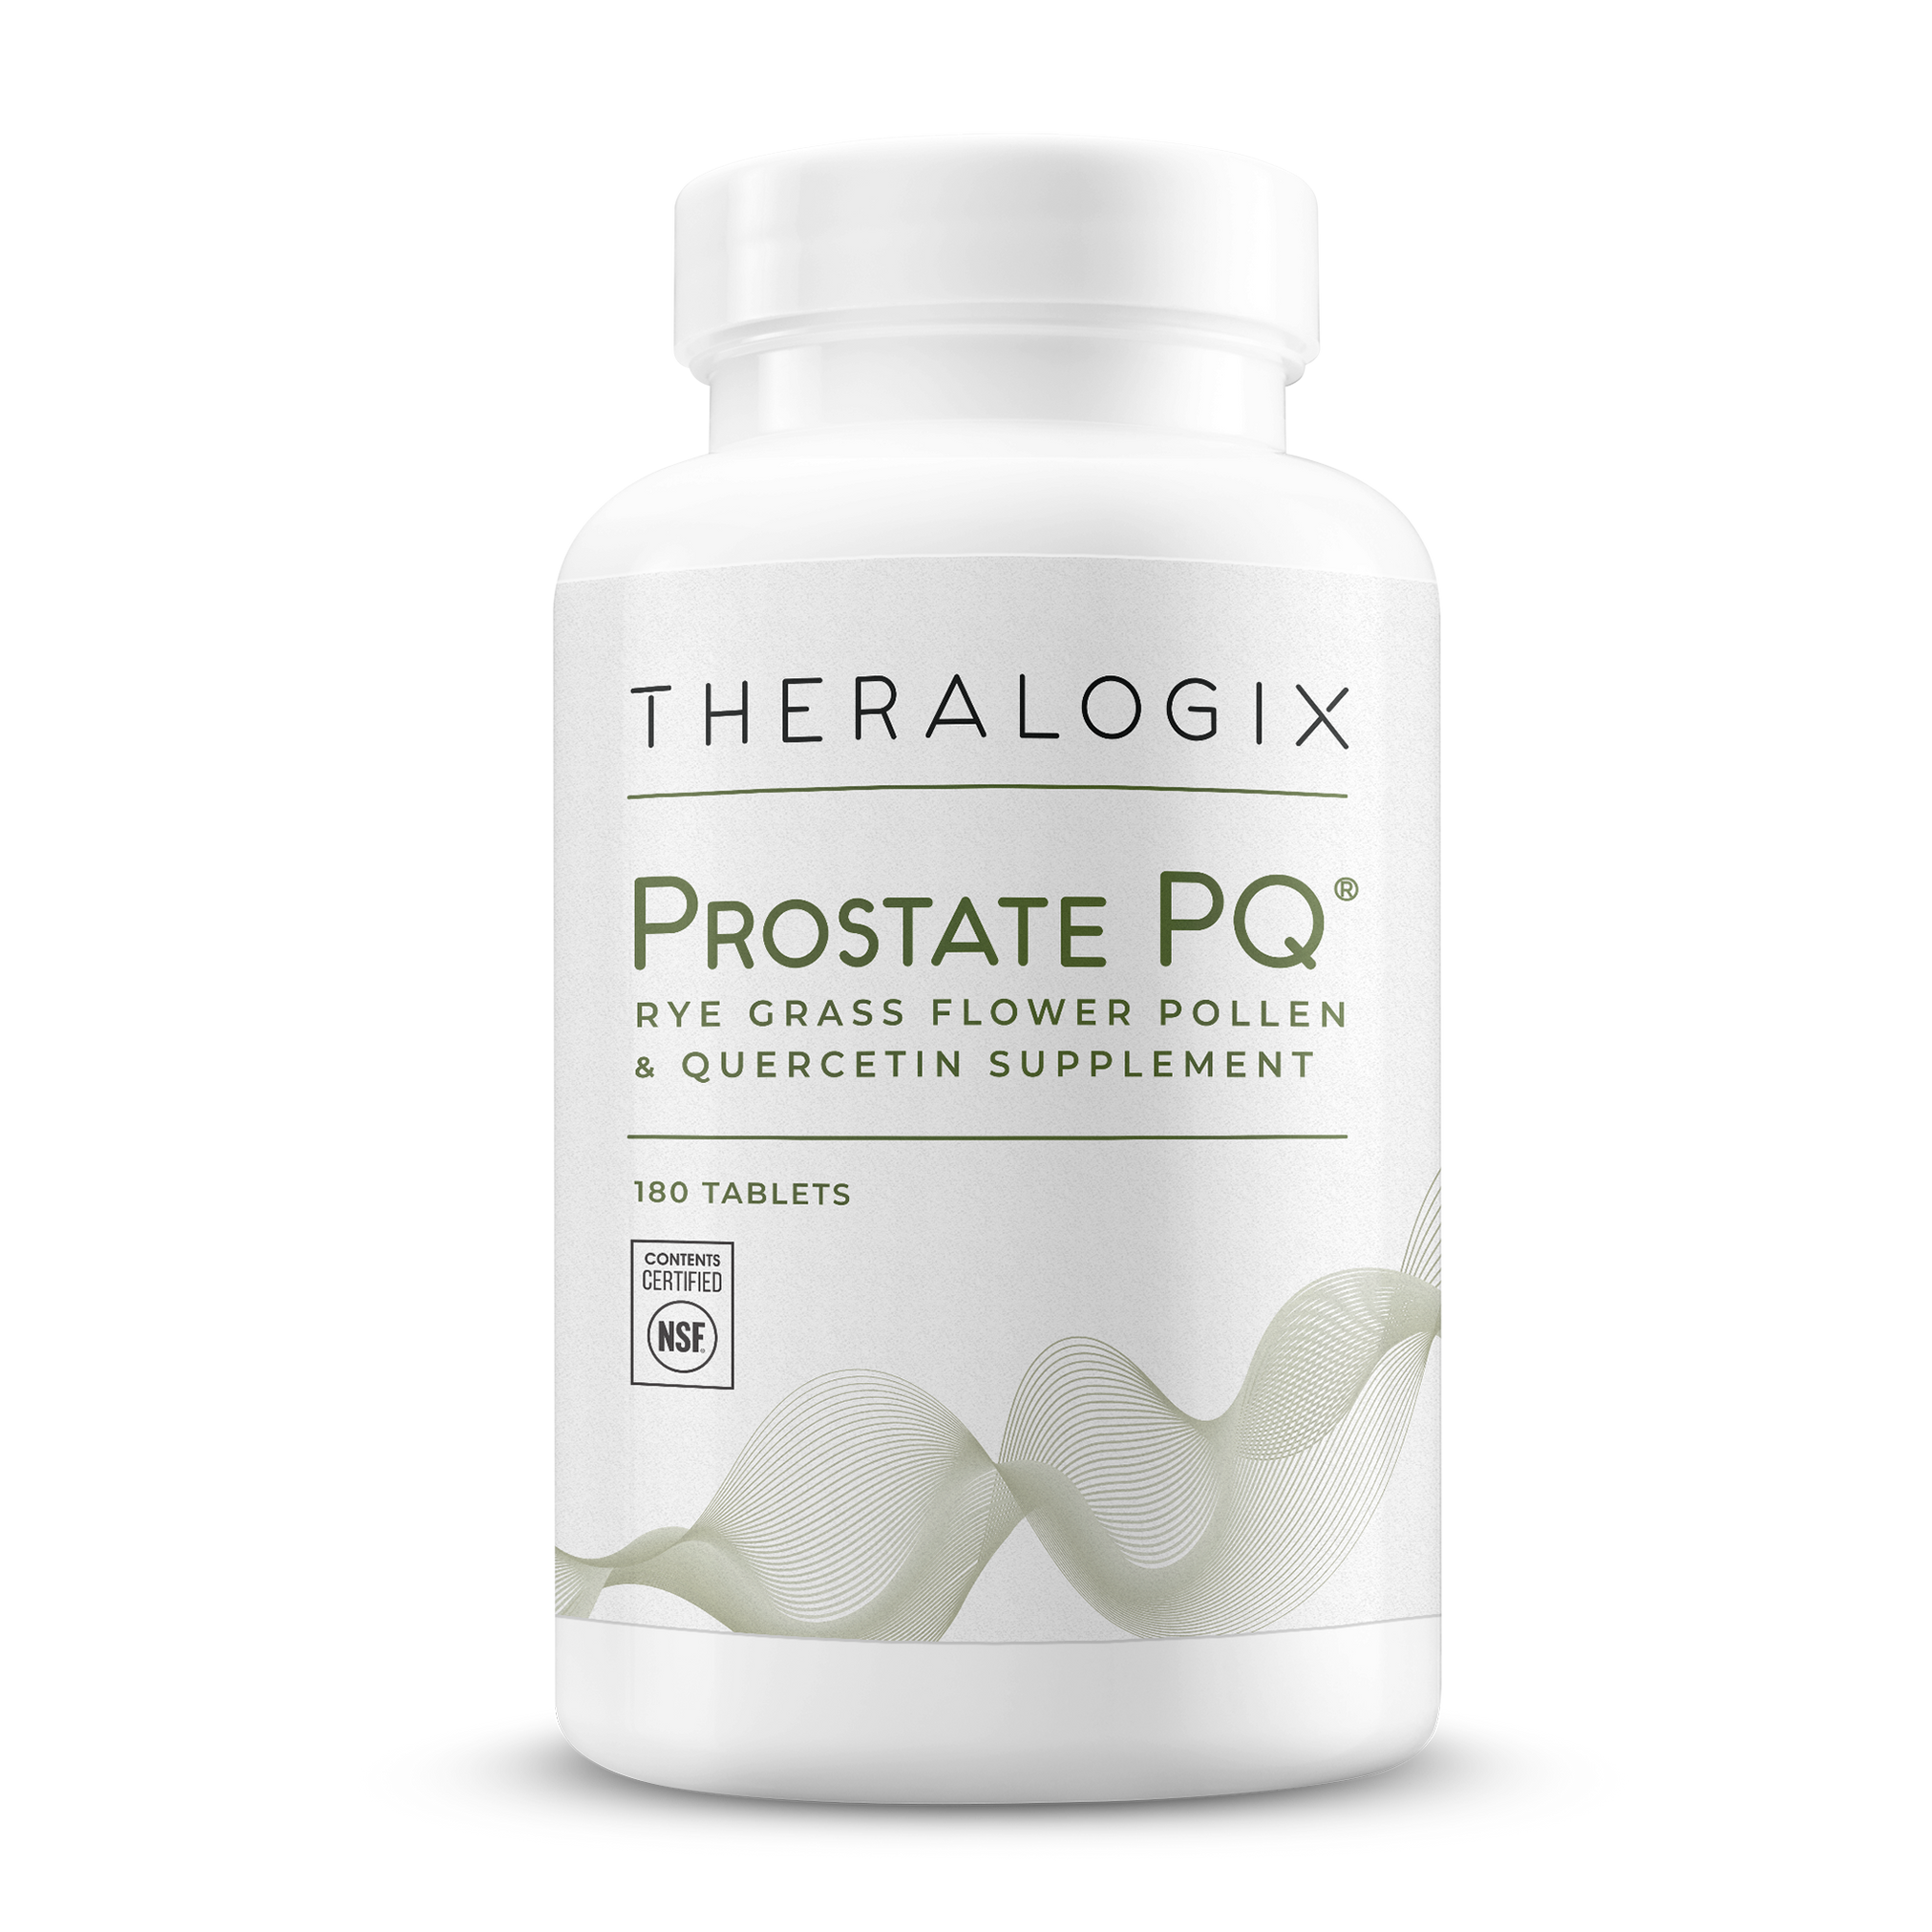 Prostate PQ® Rye Grass Fower Pollen & Quercetin Supplement